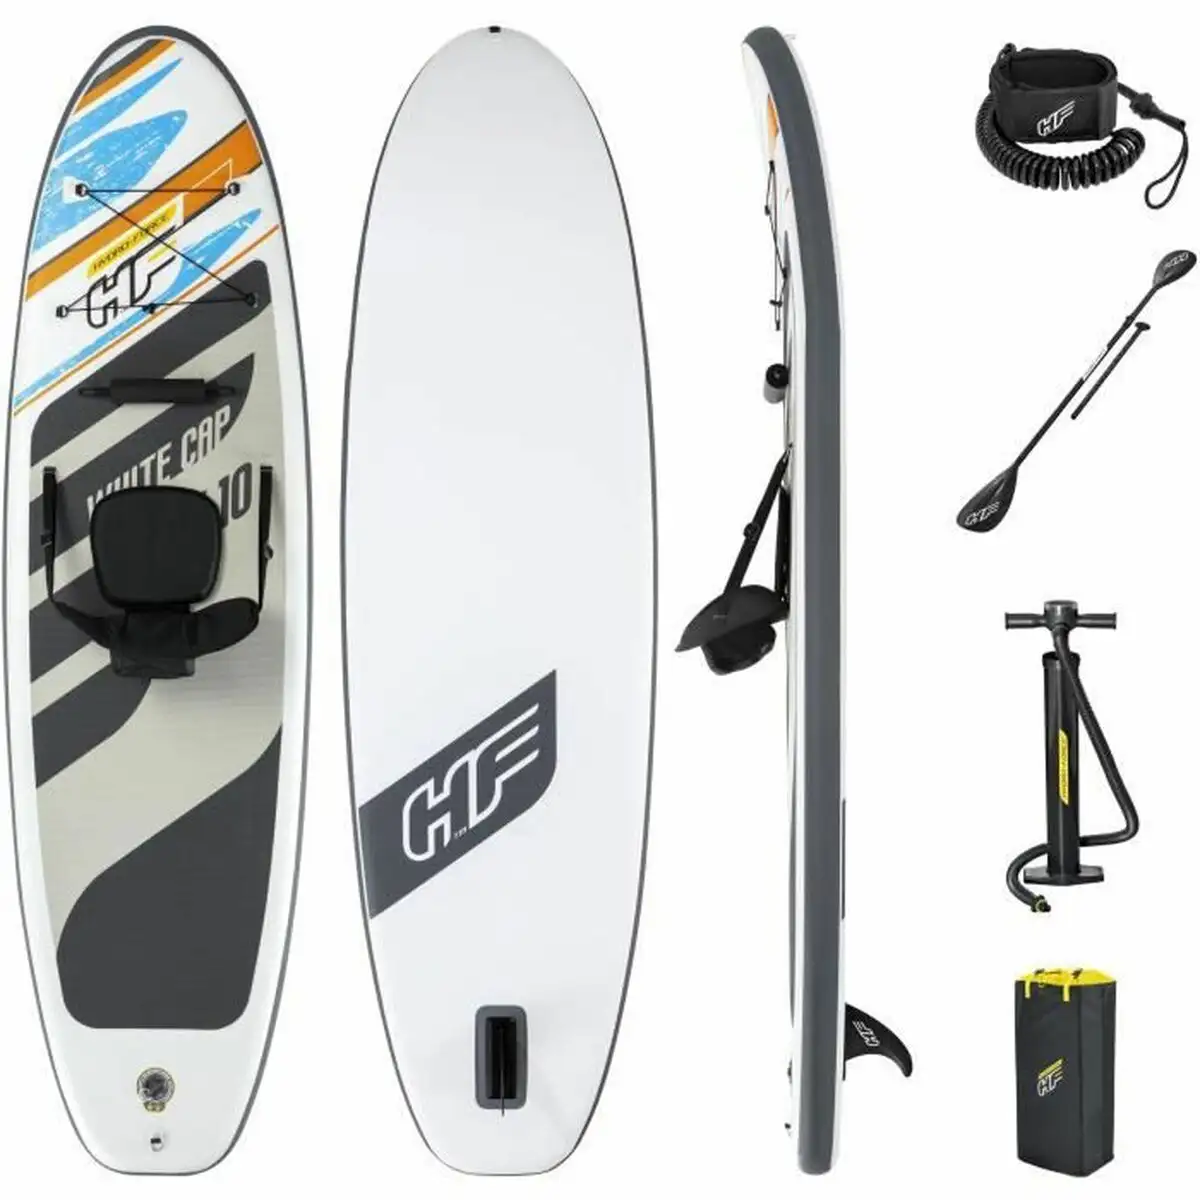 Planche de paddle surf bestway 65341 blanc_1021. DIAYTAR SENEGAL - Là où Chaque Clic Compte. Parcourez notre boutique en ligne et laissez-vous guider vers des trouvailles uniques qui enrichiront votre quotidien.